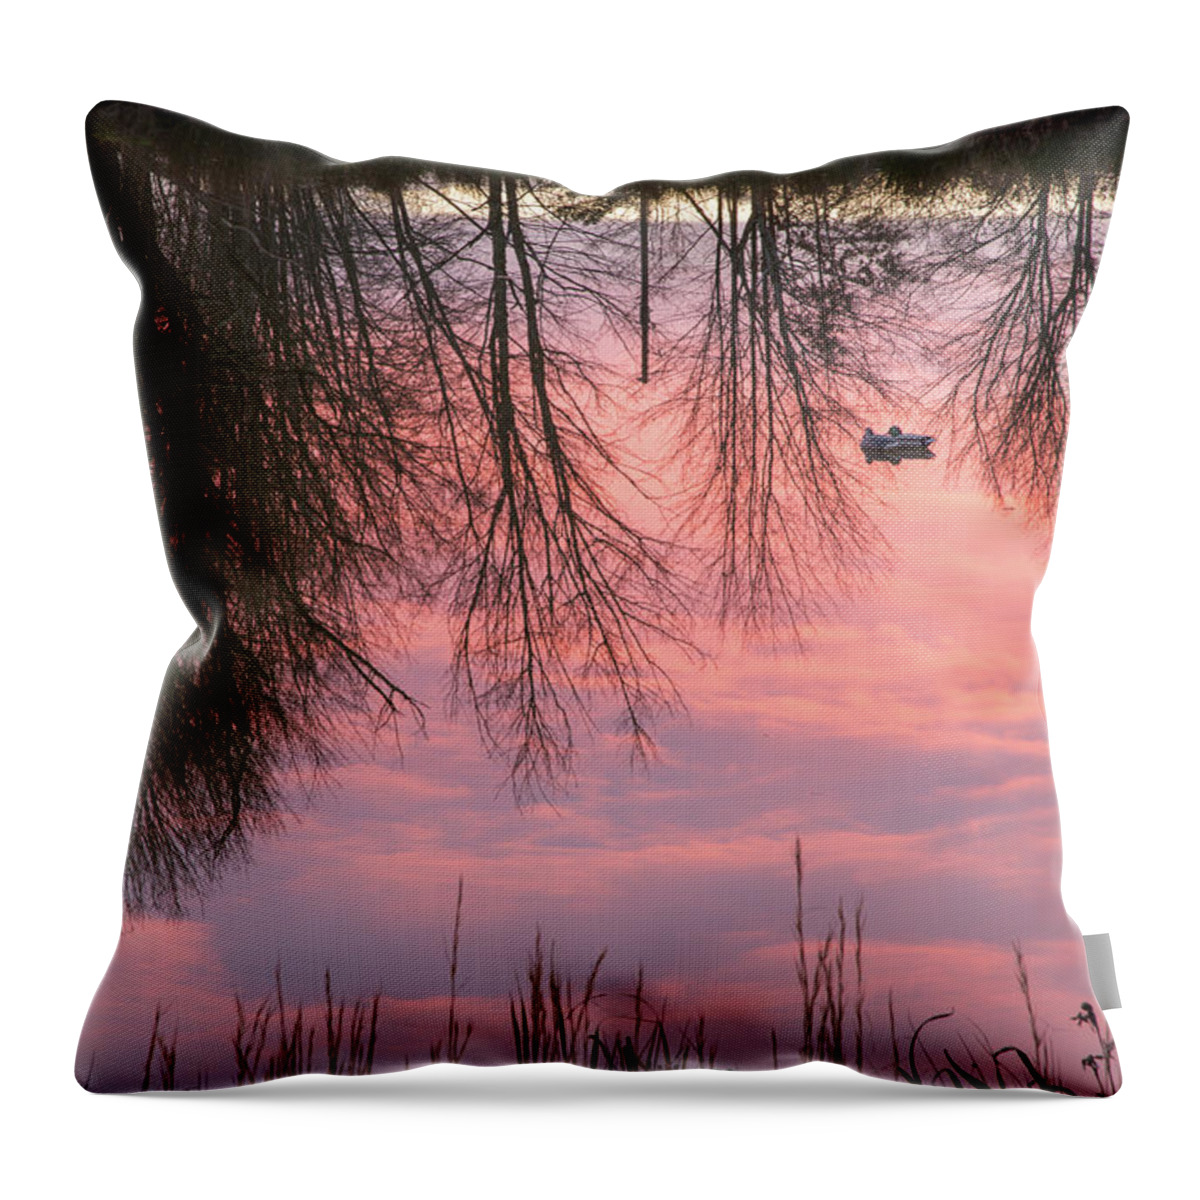 Sunset Throw Pillow featuring the photograph Reflecting Pond by Jurgen Lorenzen